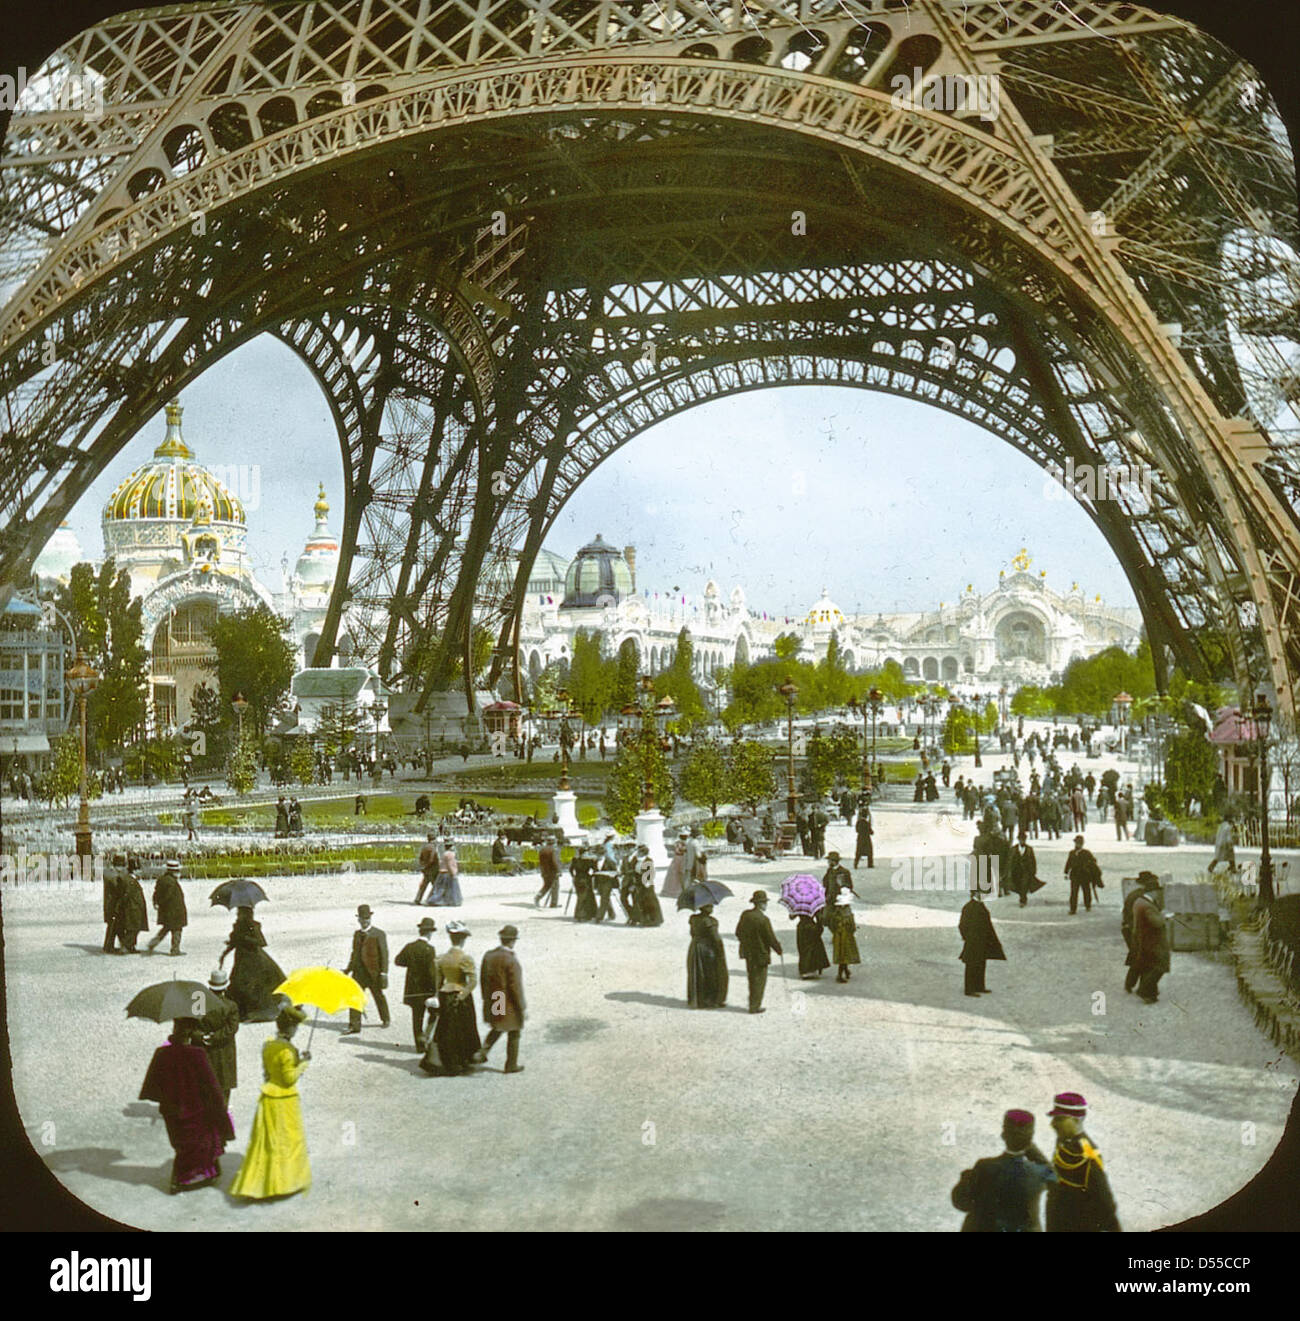 Paris Exposition: Champ de Mars and Eiffel Tower, Paris, France, 1900 Stock Photo